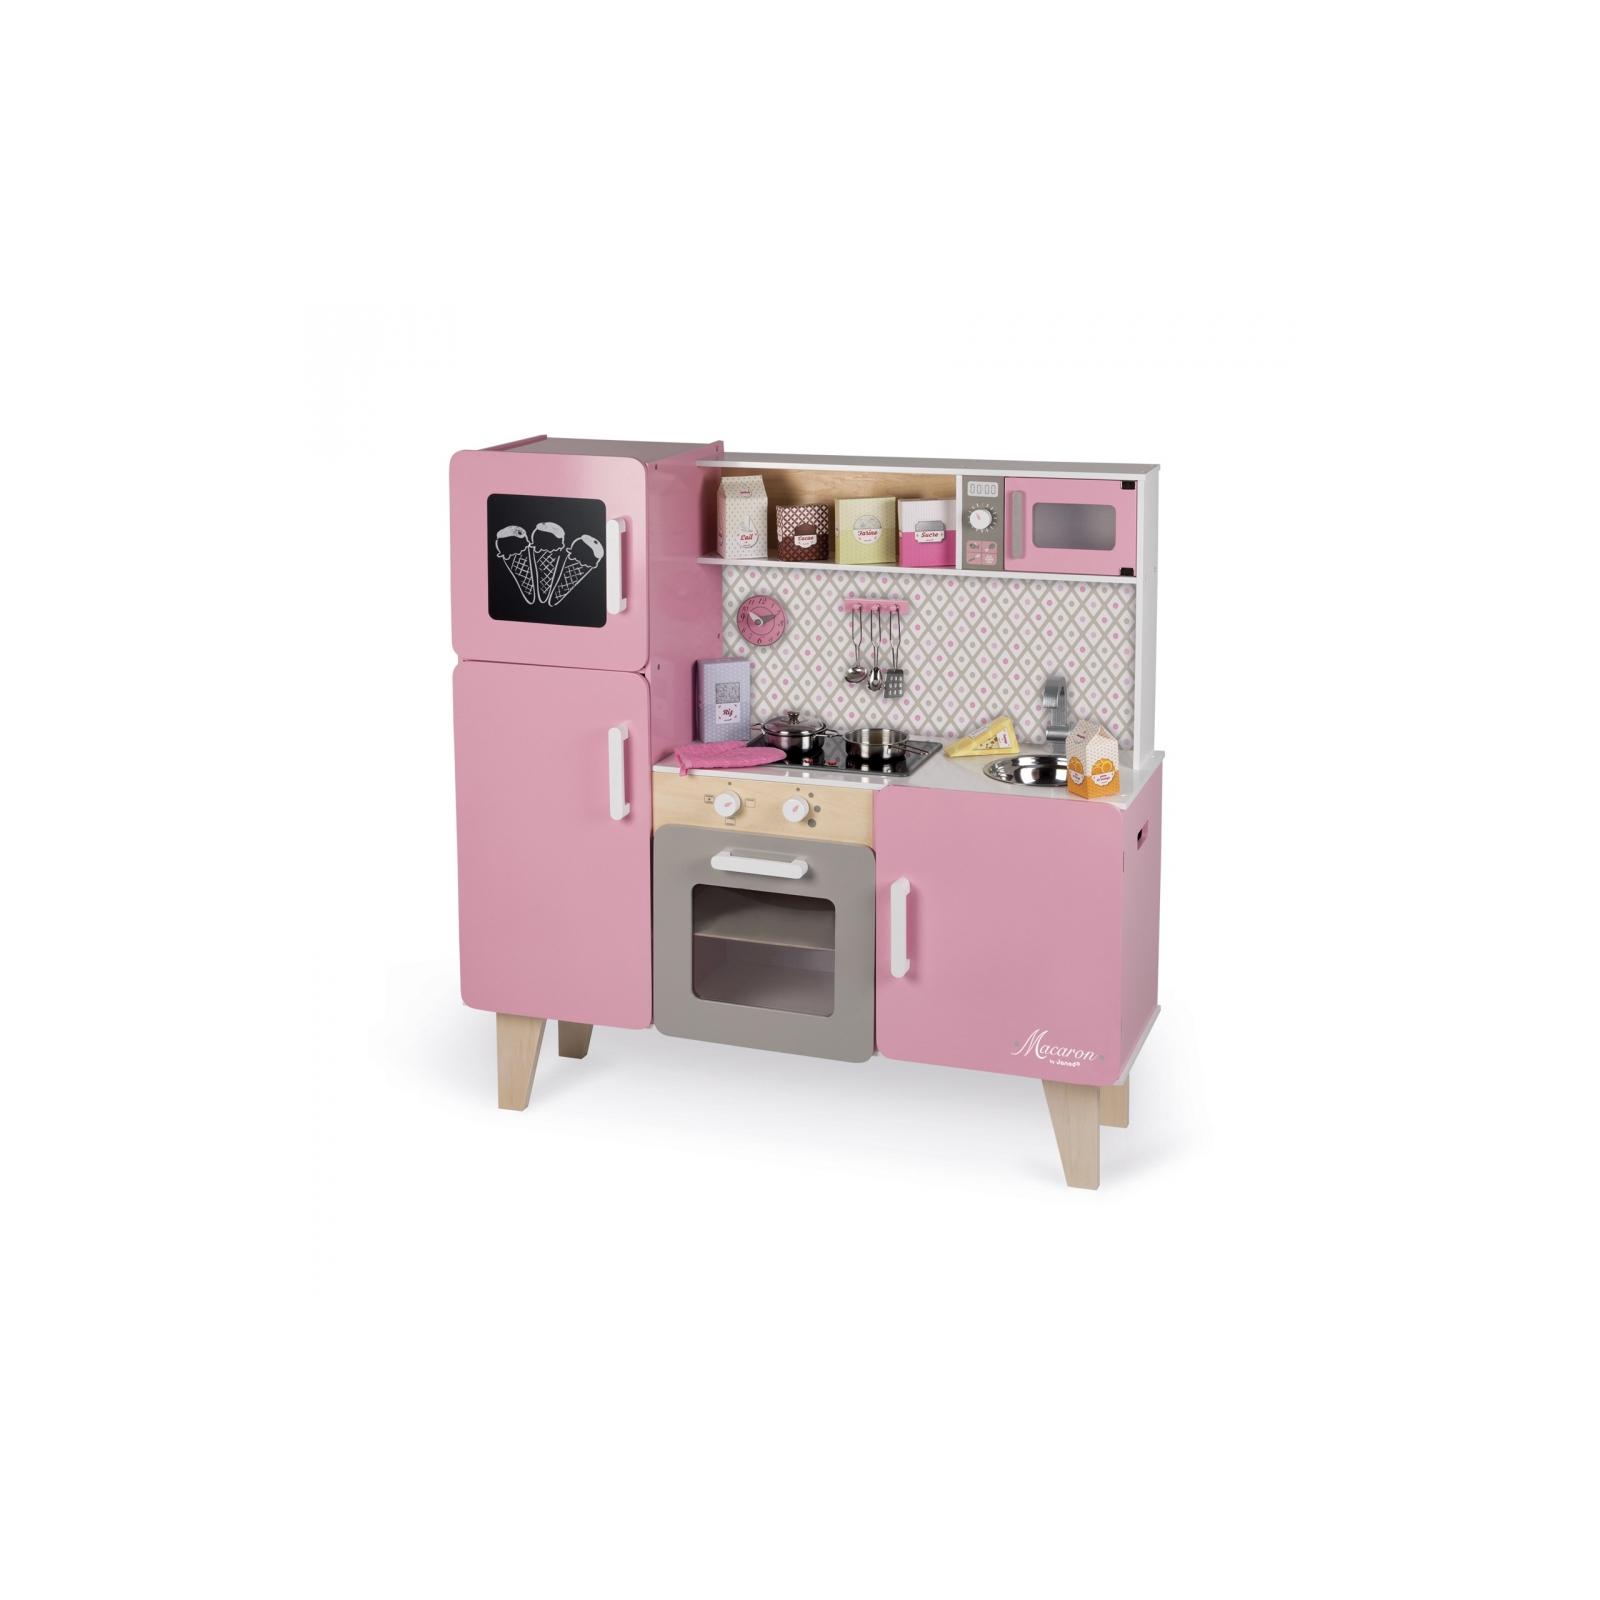 Игровой набор Janod Кухня розовая (J06571)